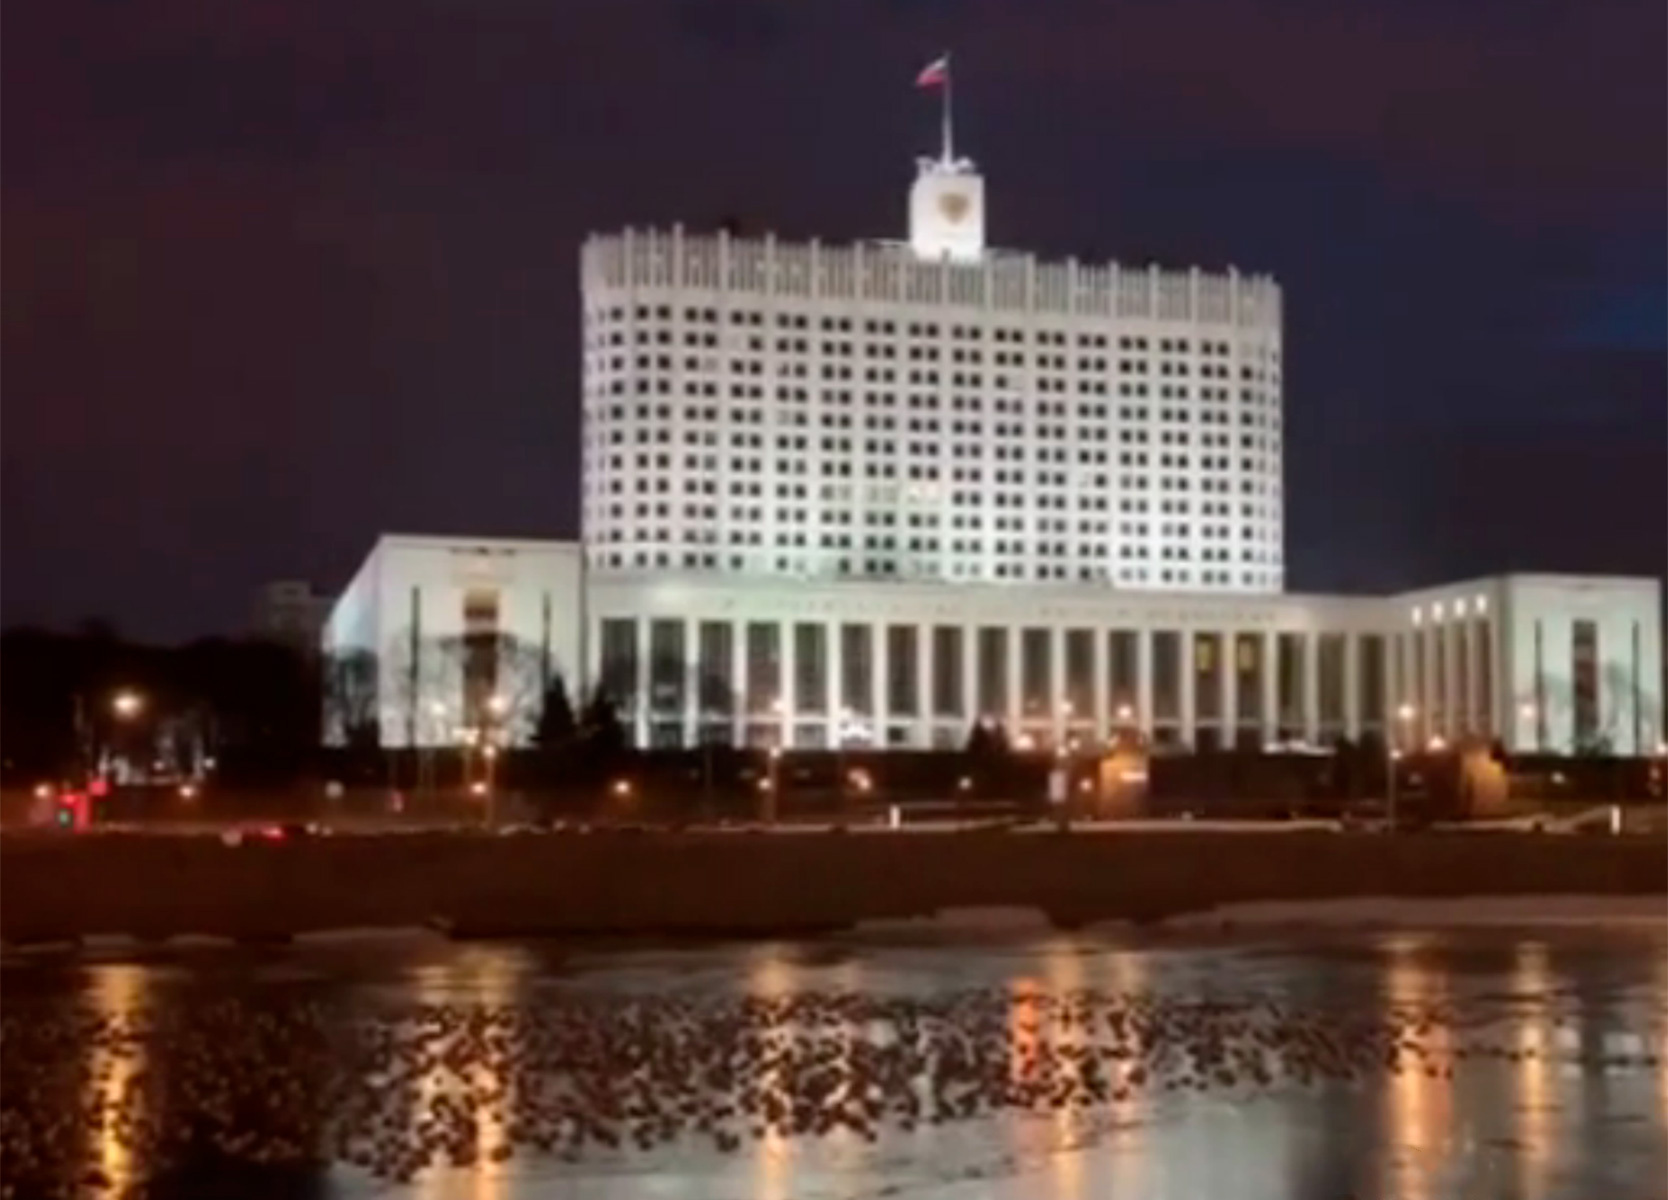 дом правительства в москве